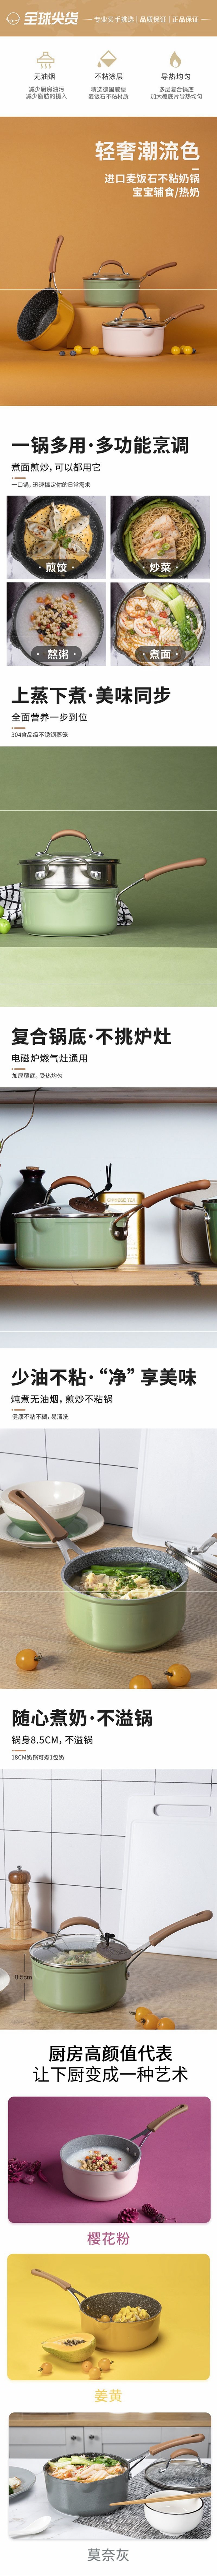 网易严选多色可选多功能锅 一锅多用轻松烹饪 奶锅 (黄色)16cm